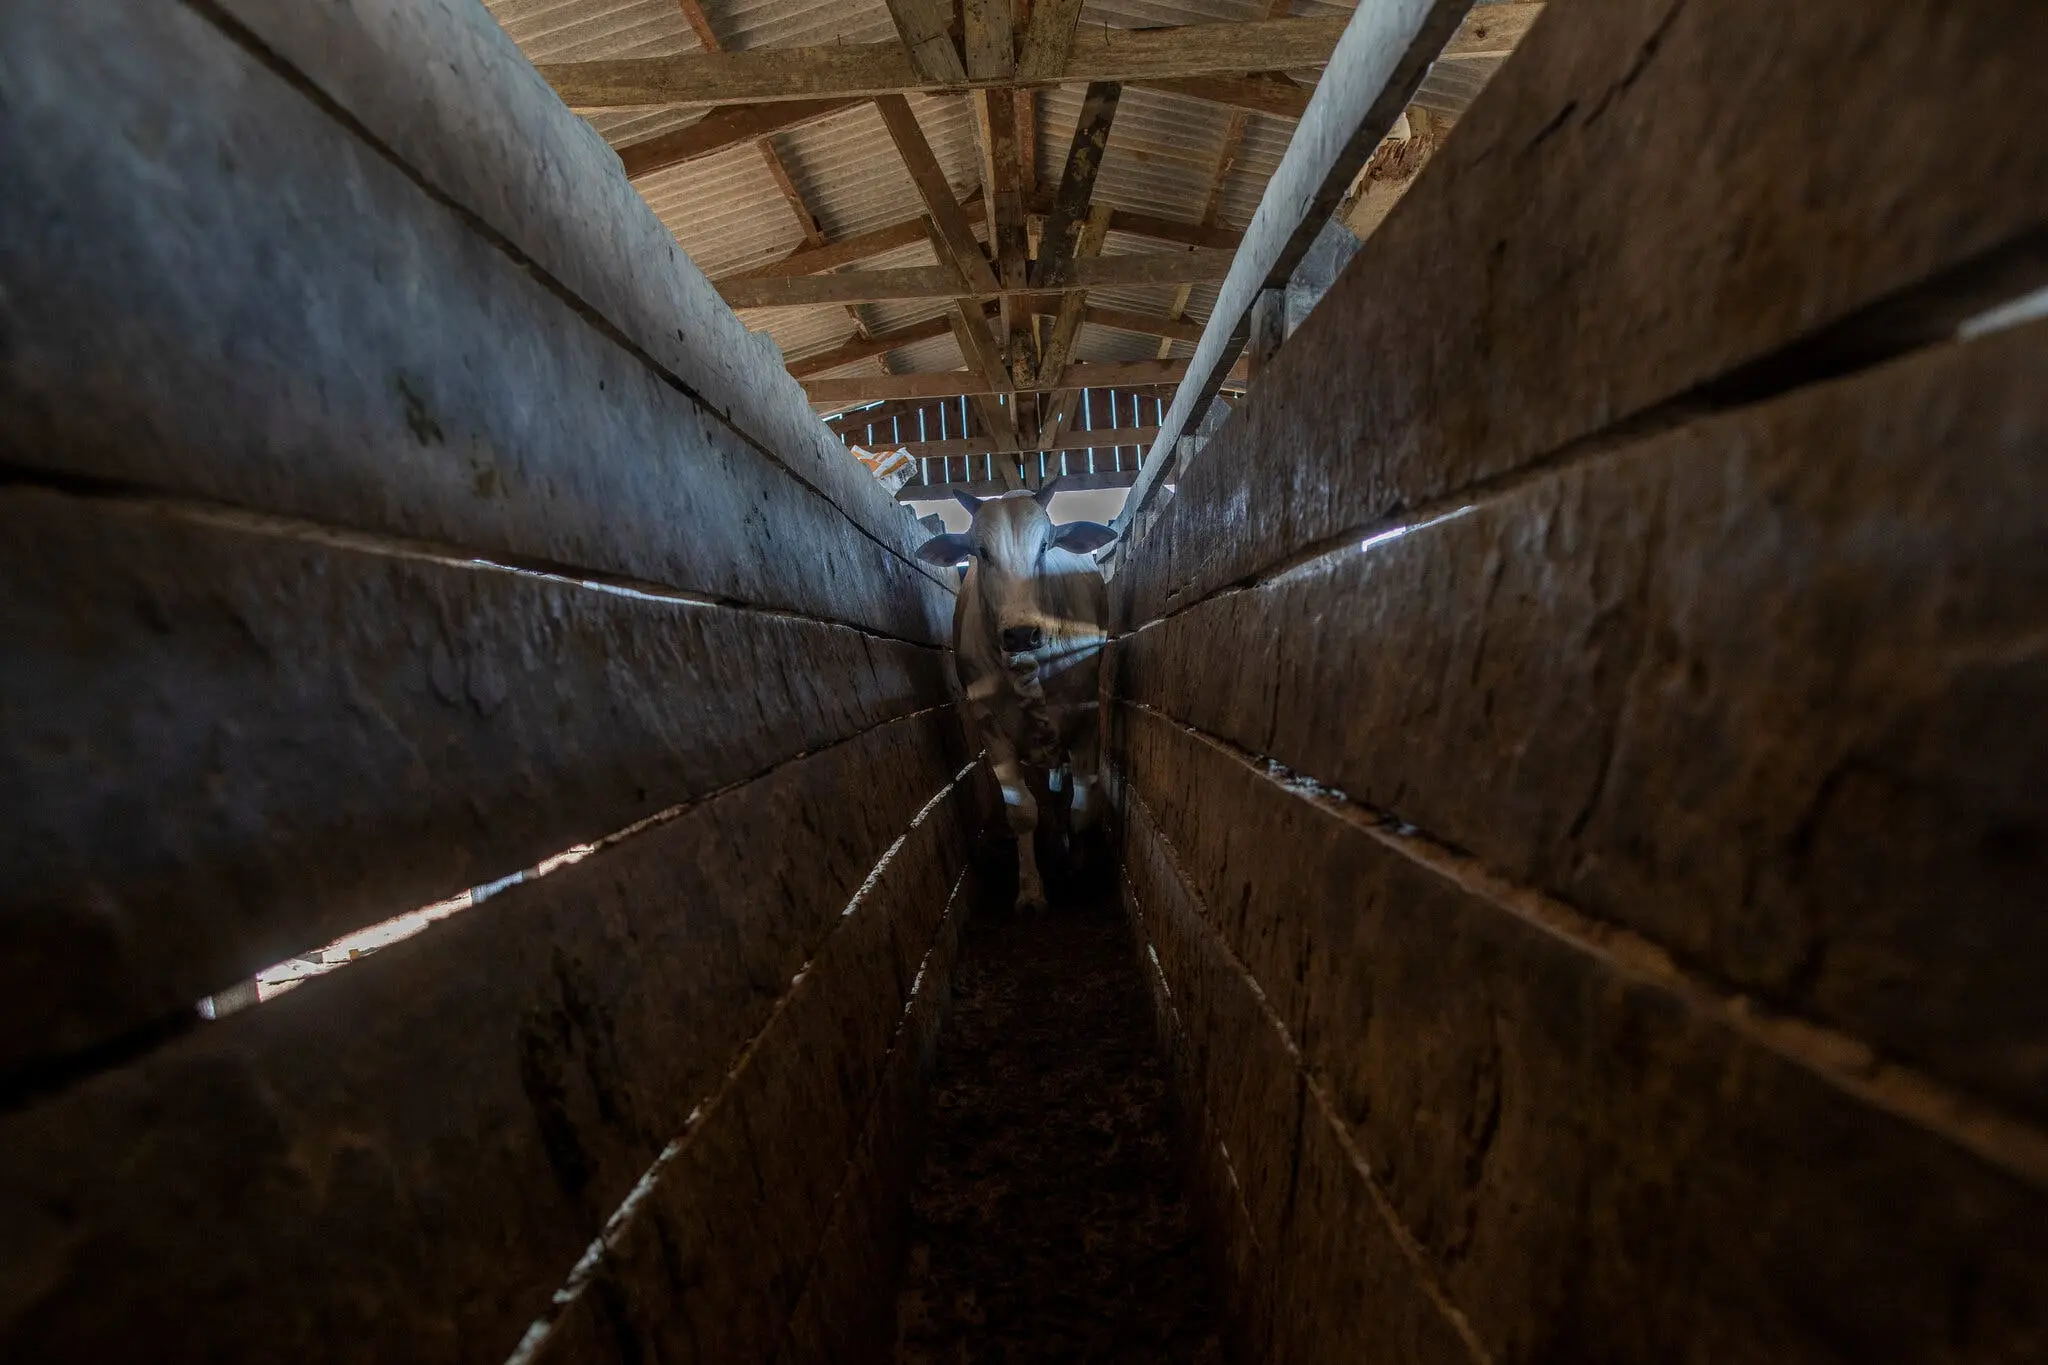 Cattle from Mr. Felipe’s farm were herded onto trucks for transport to slaughter